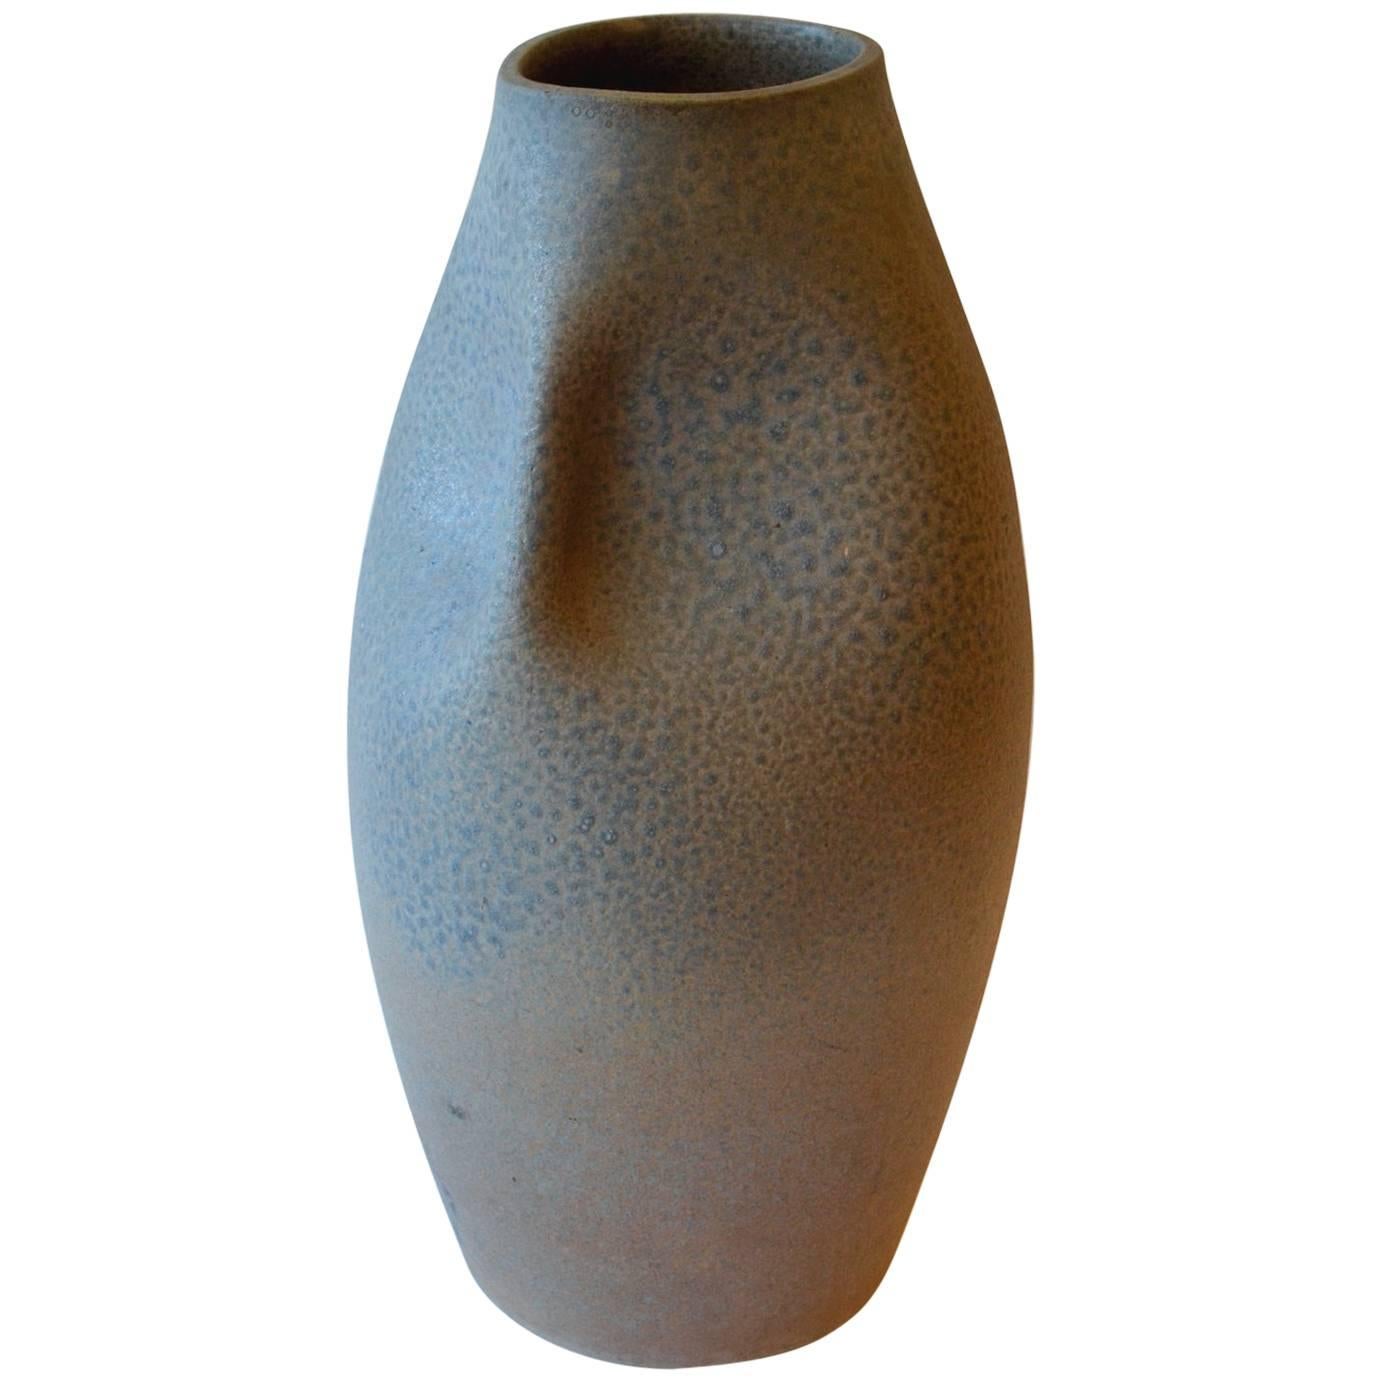 Grand vase en céramique des années 1960 avec glaçure bleu marine